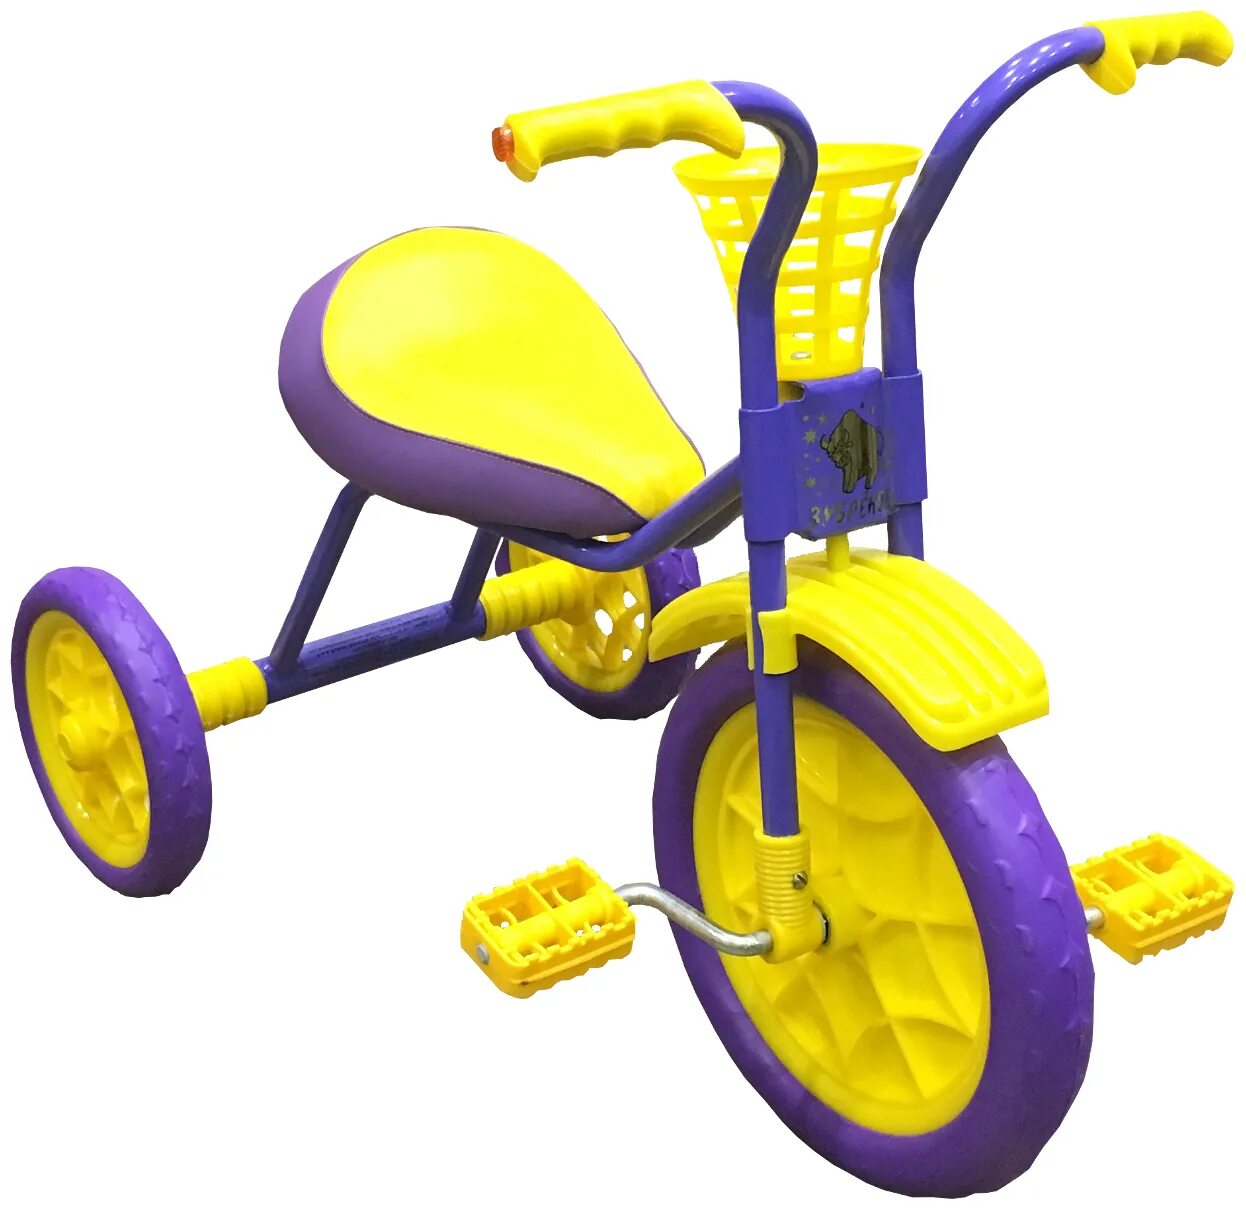 Трехколесный велосипед купить минск. Велосипед Зубренок трехколесный. Велосипед TCV 083470 трехколесный. Cuty Raid 2023 велосипед трёхколёсный. Трехколесный велосипед Ocie c201-2.